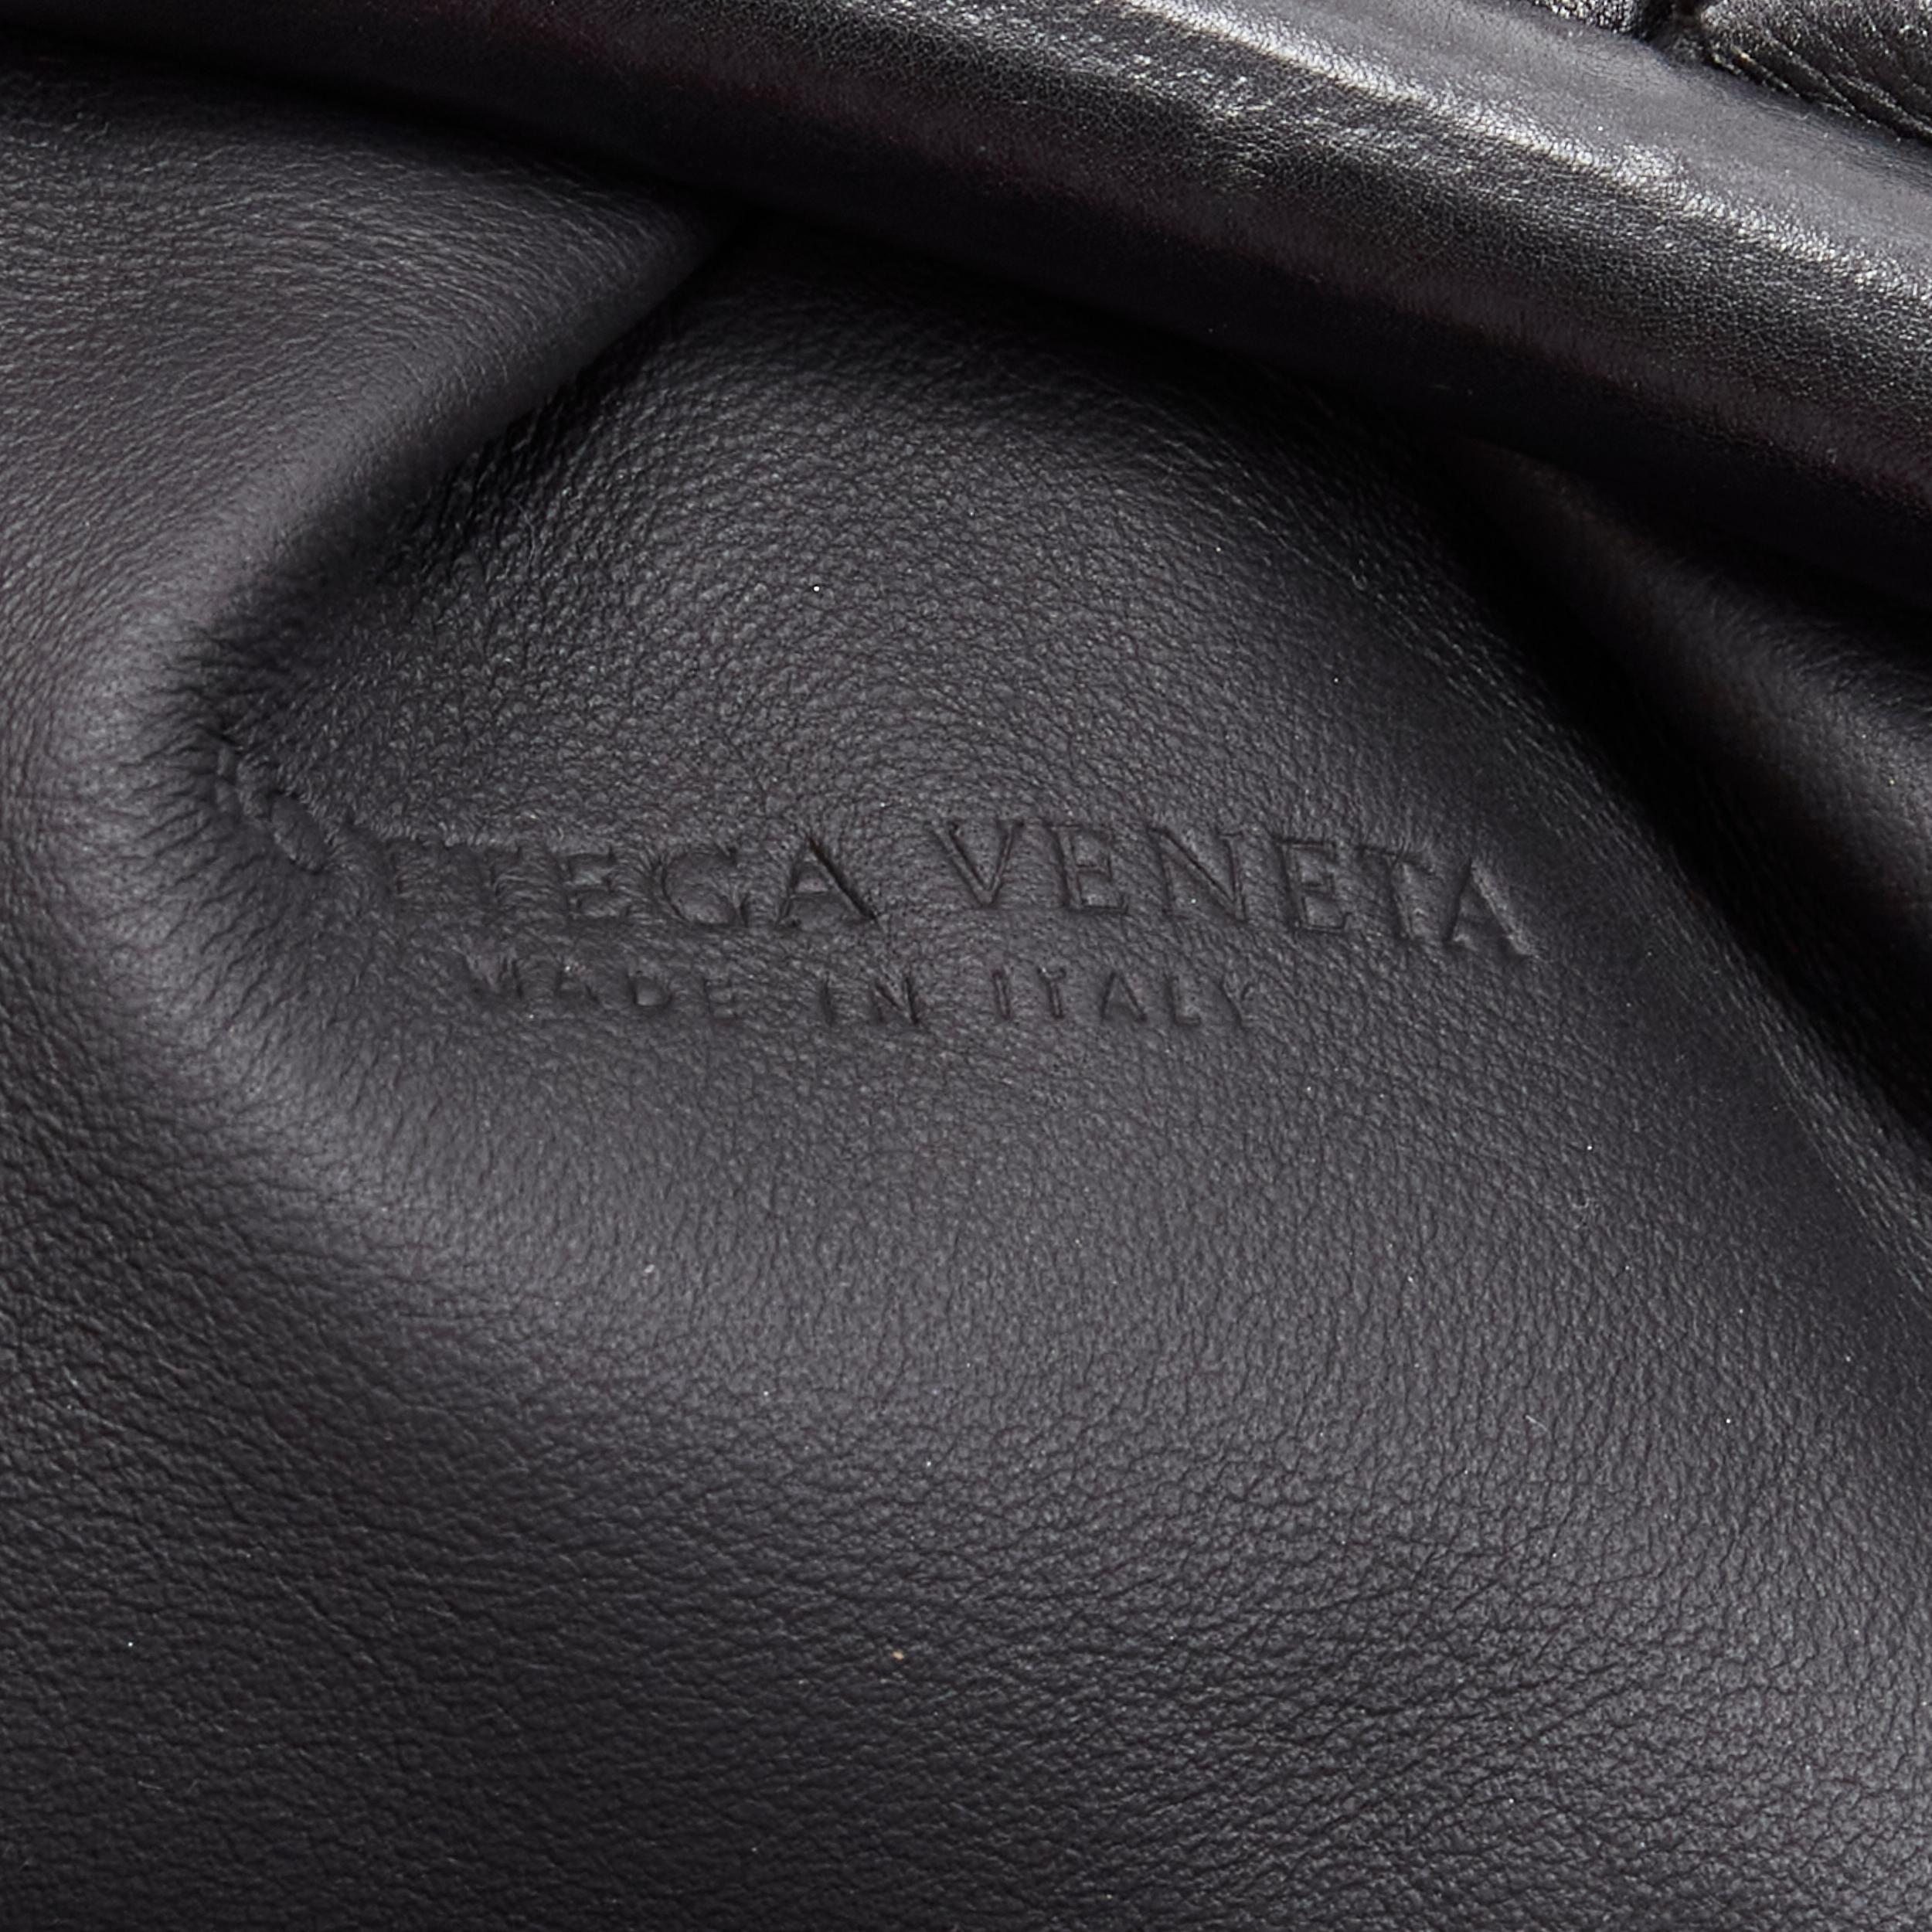 Women's BOTTEGA VENETA The Intrecciato Pouch black signature woven leather clutch bag For Sale